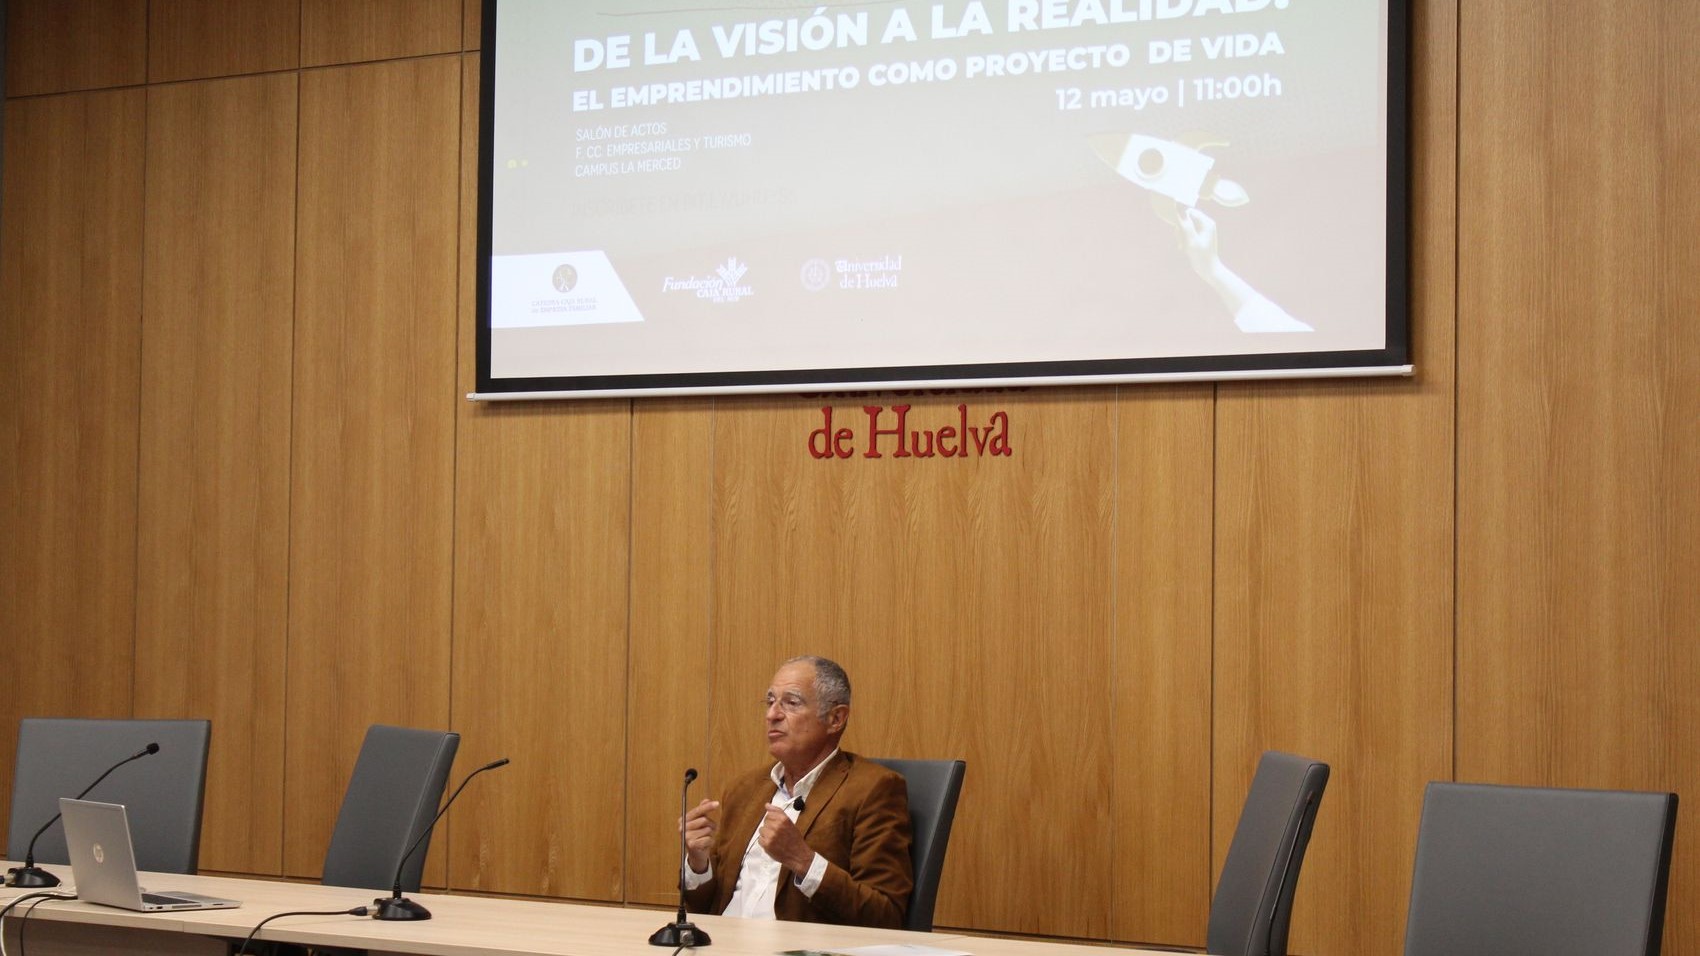 Ciclo de Conferencias - Dela visión a la realidad - 2022